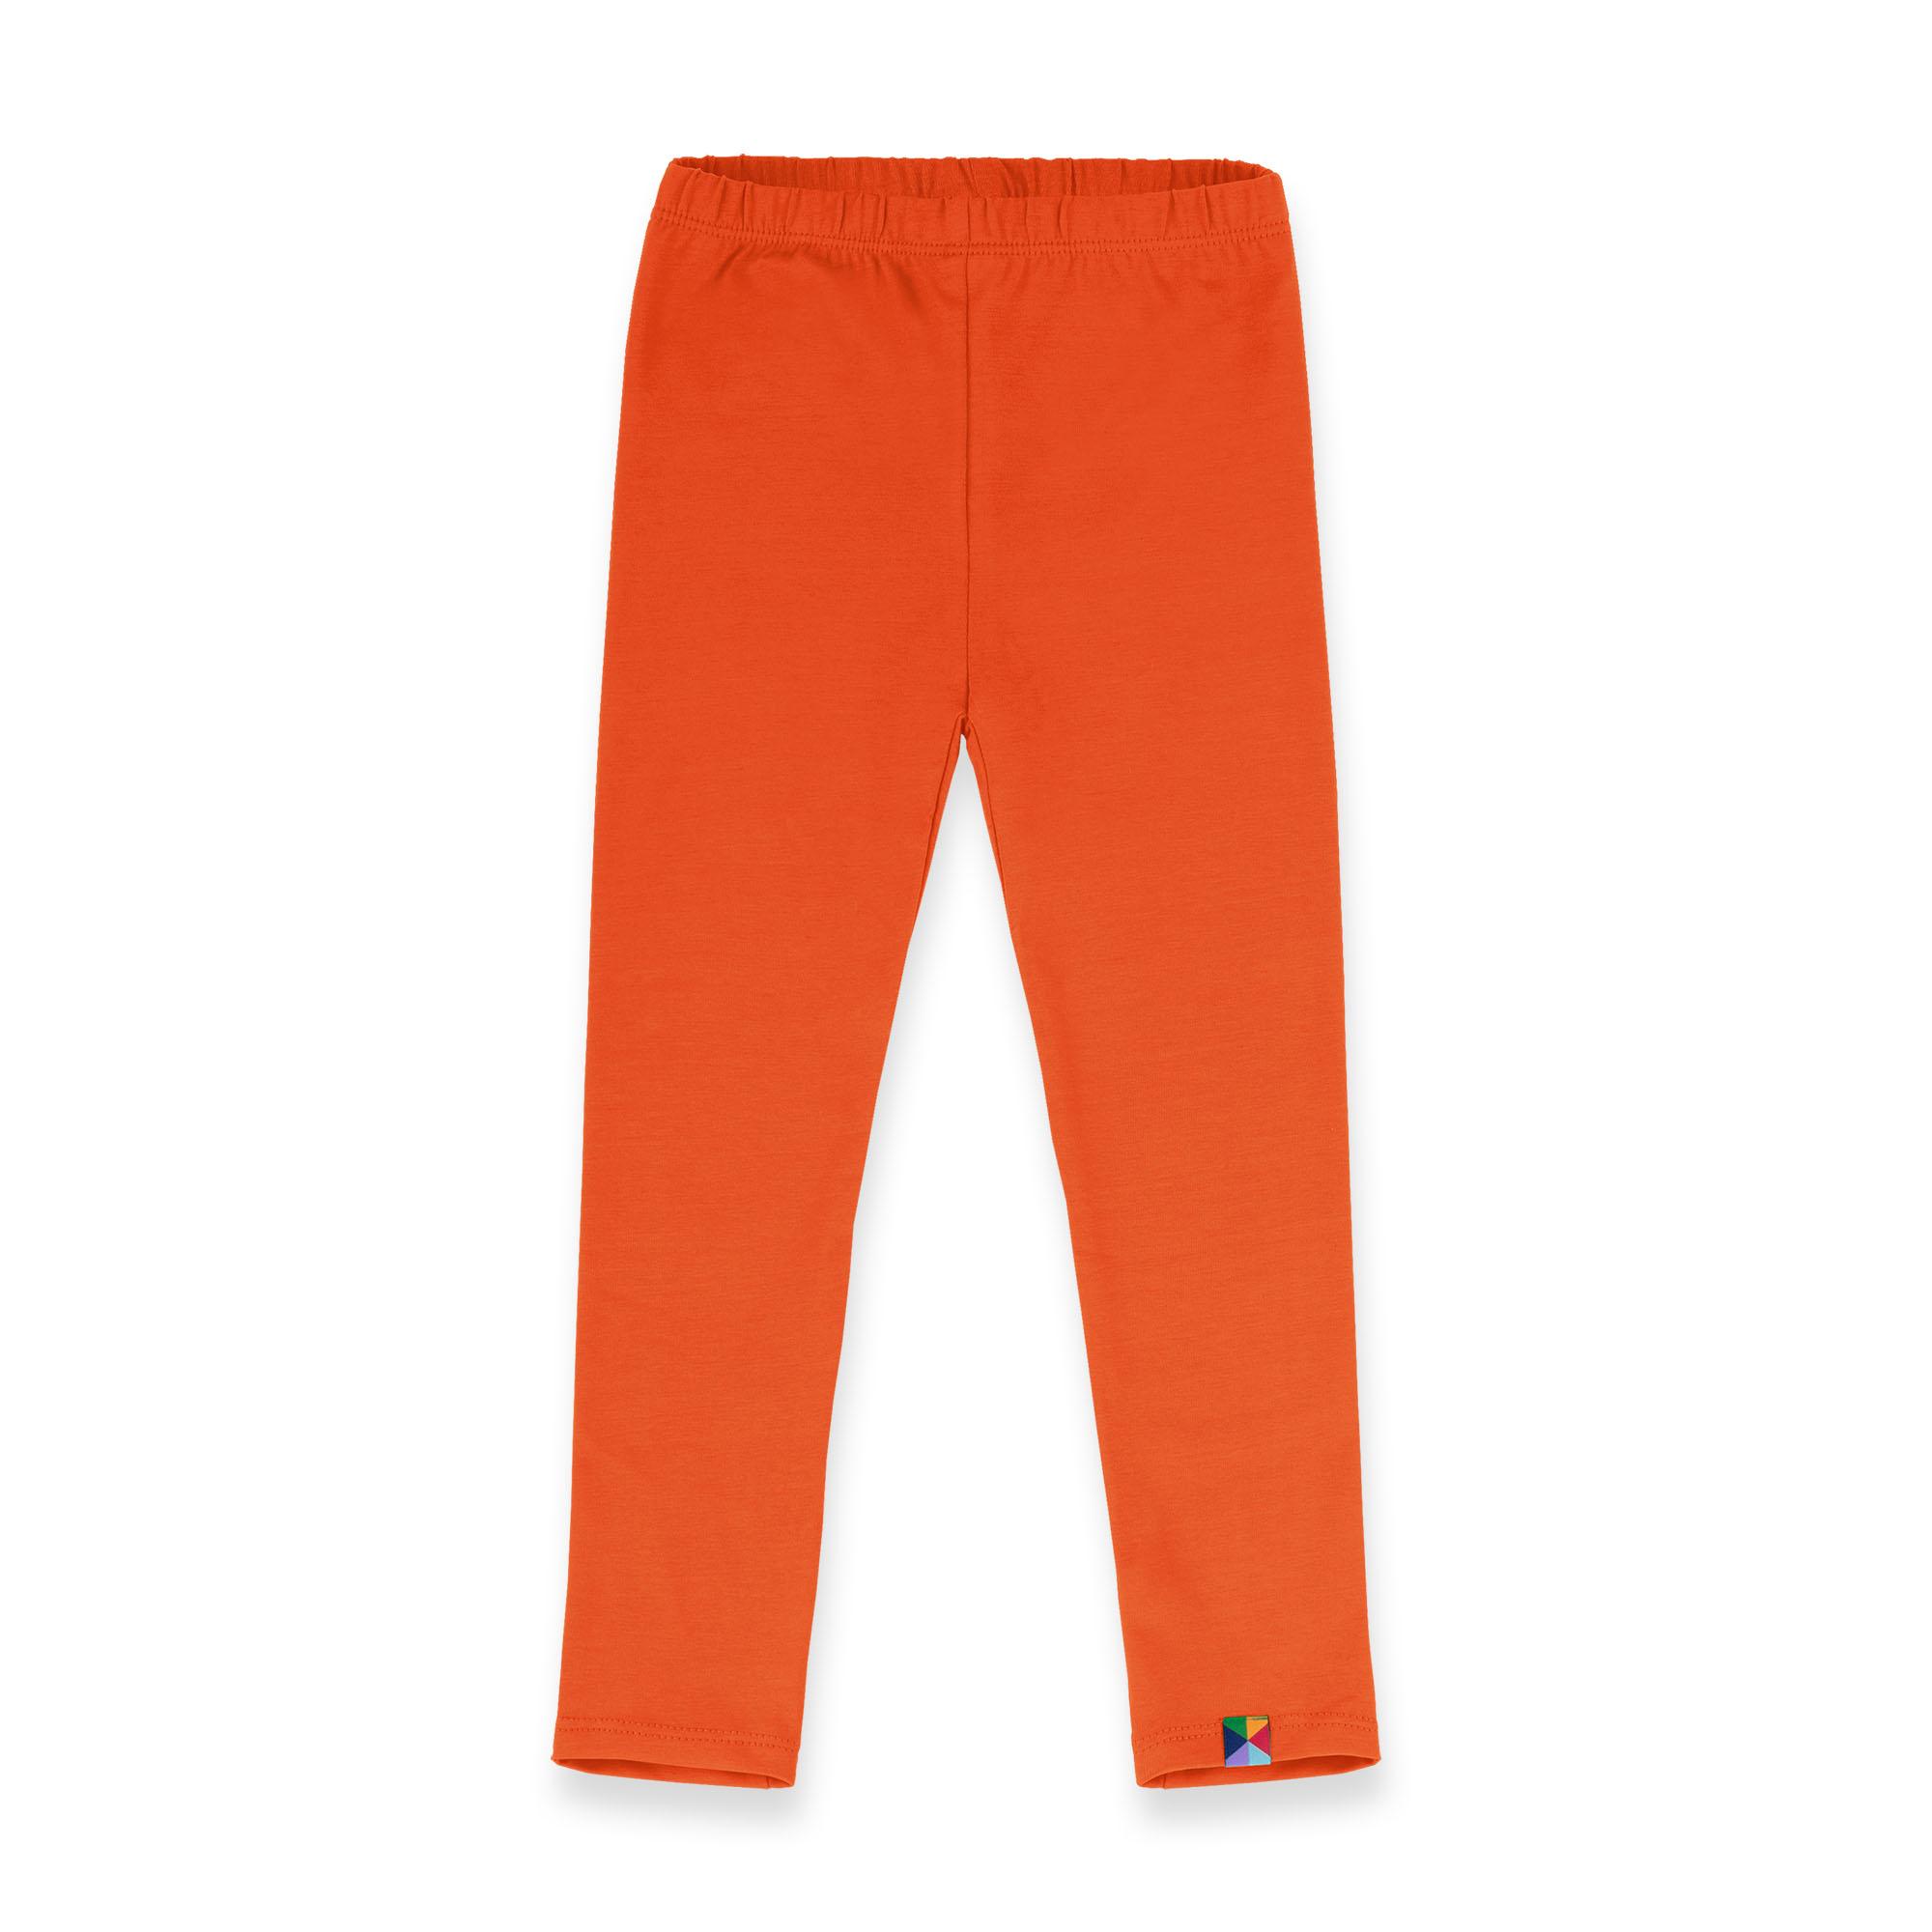 Pomarańczowe legginsy Junior